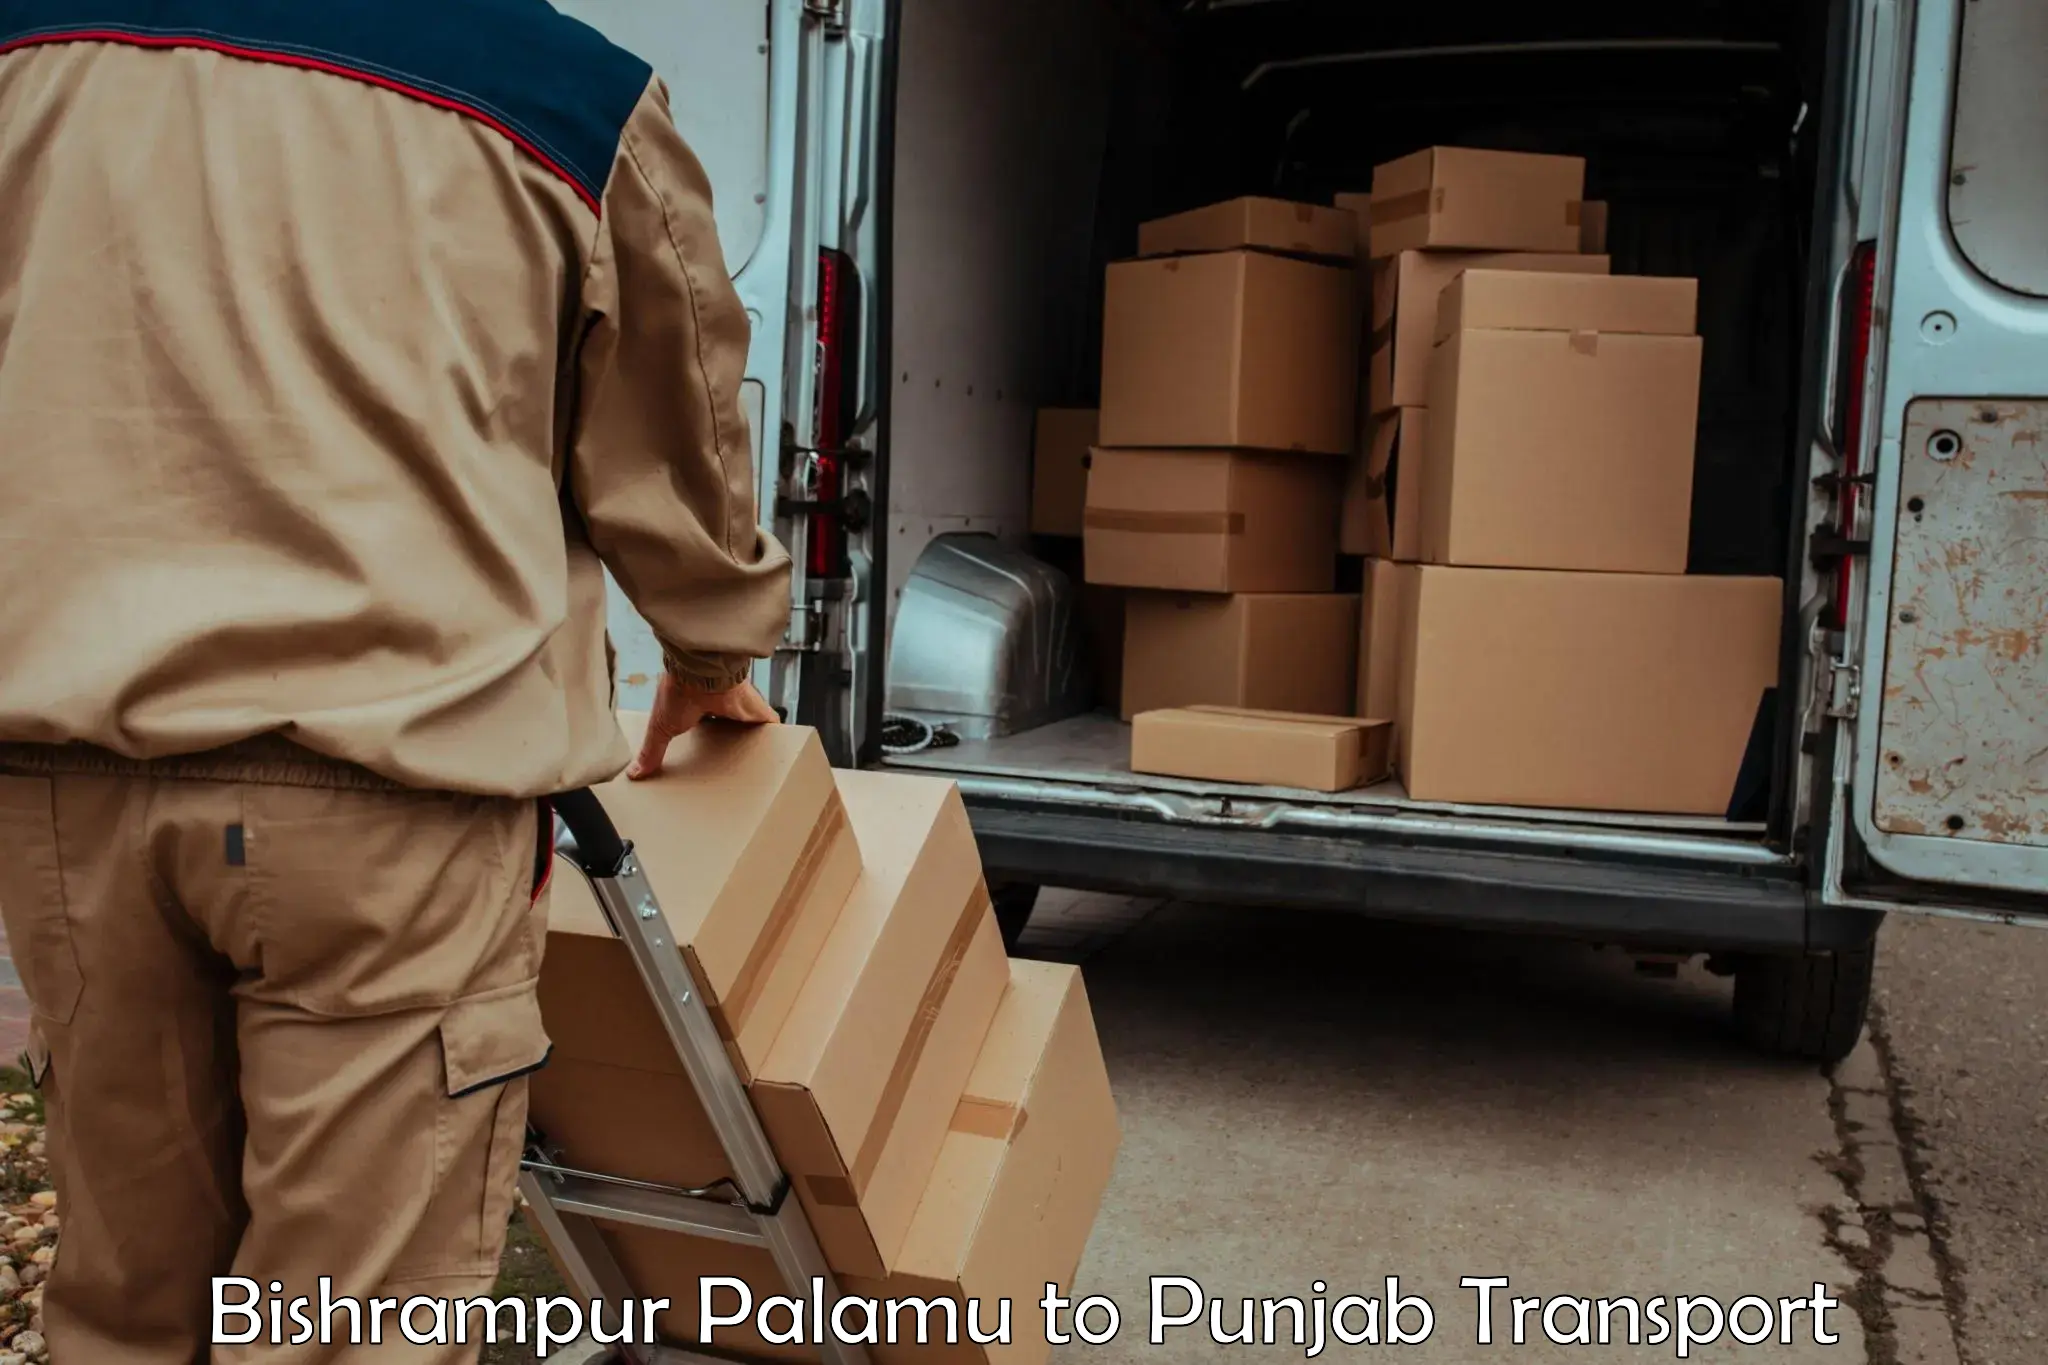 Shipping partner Bishrampur Palamu to Patiala